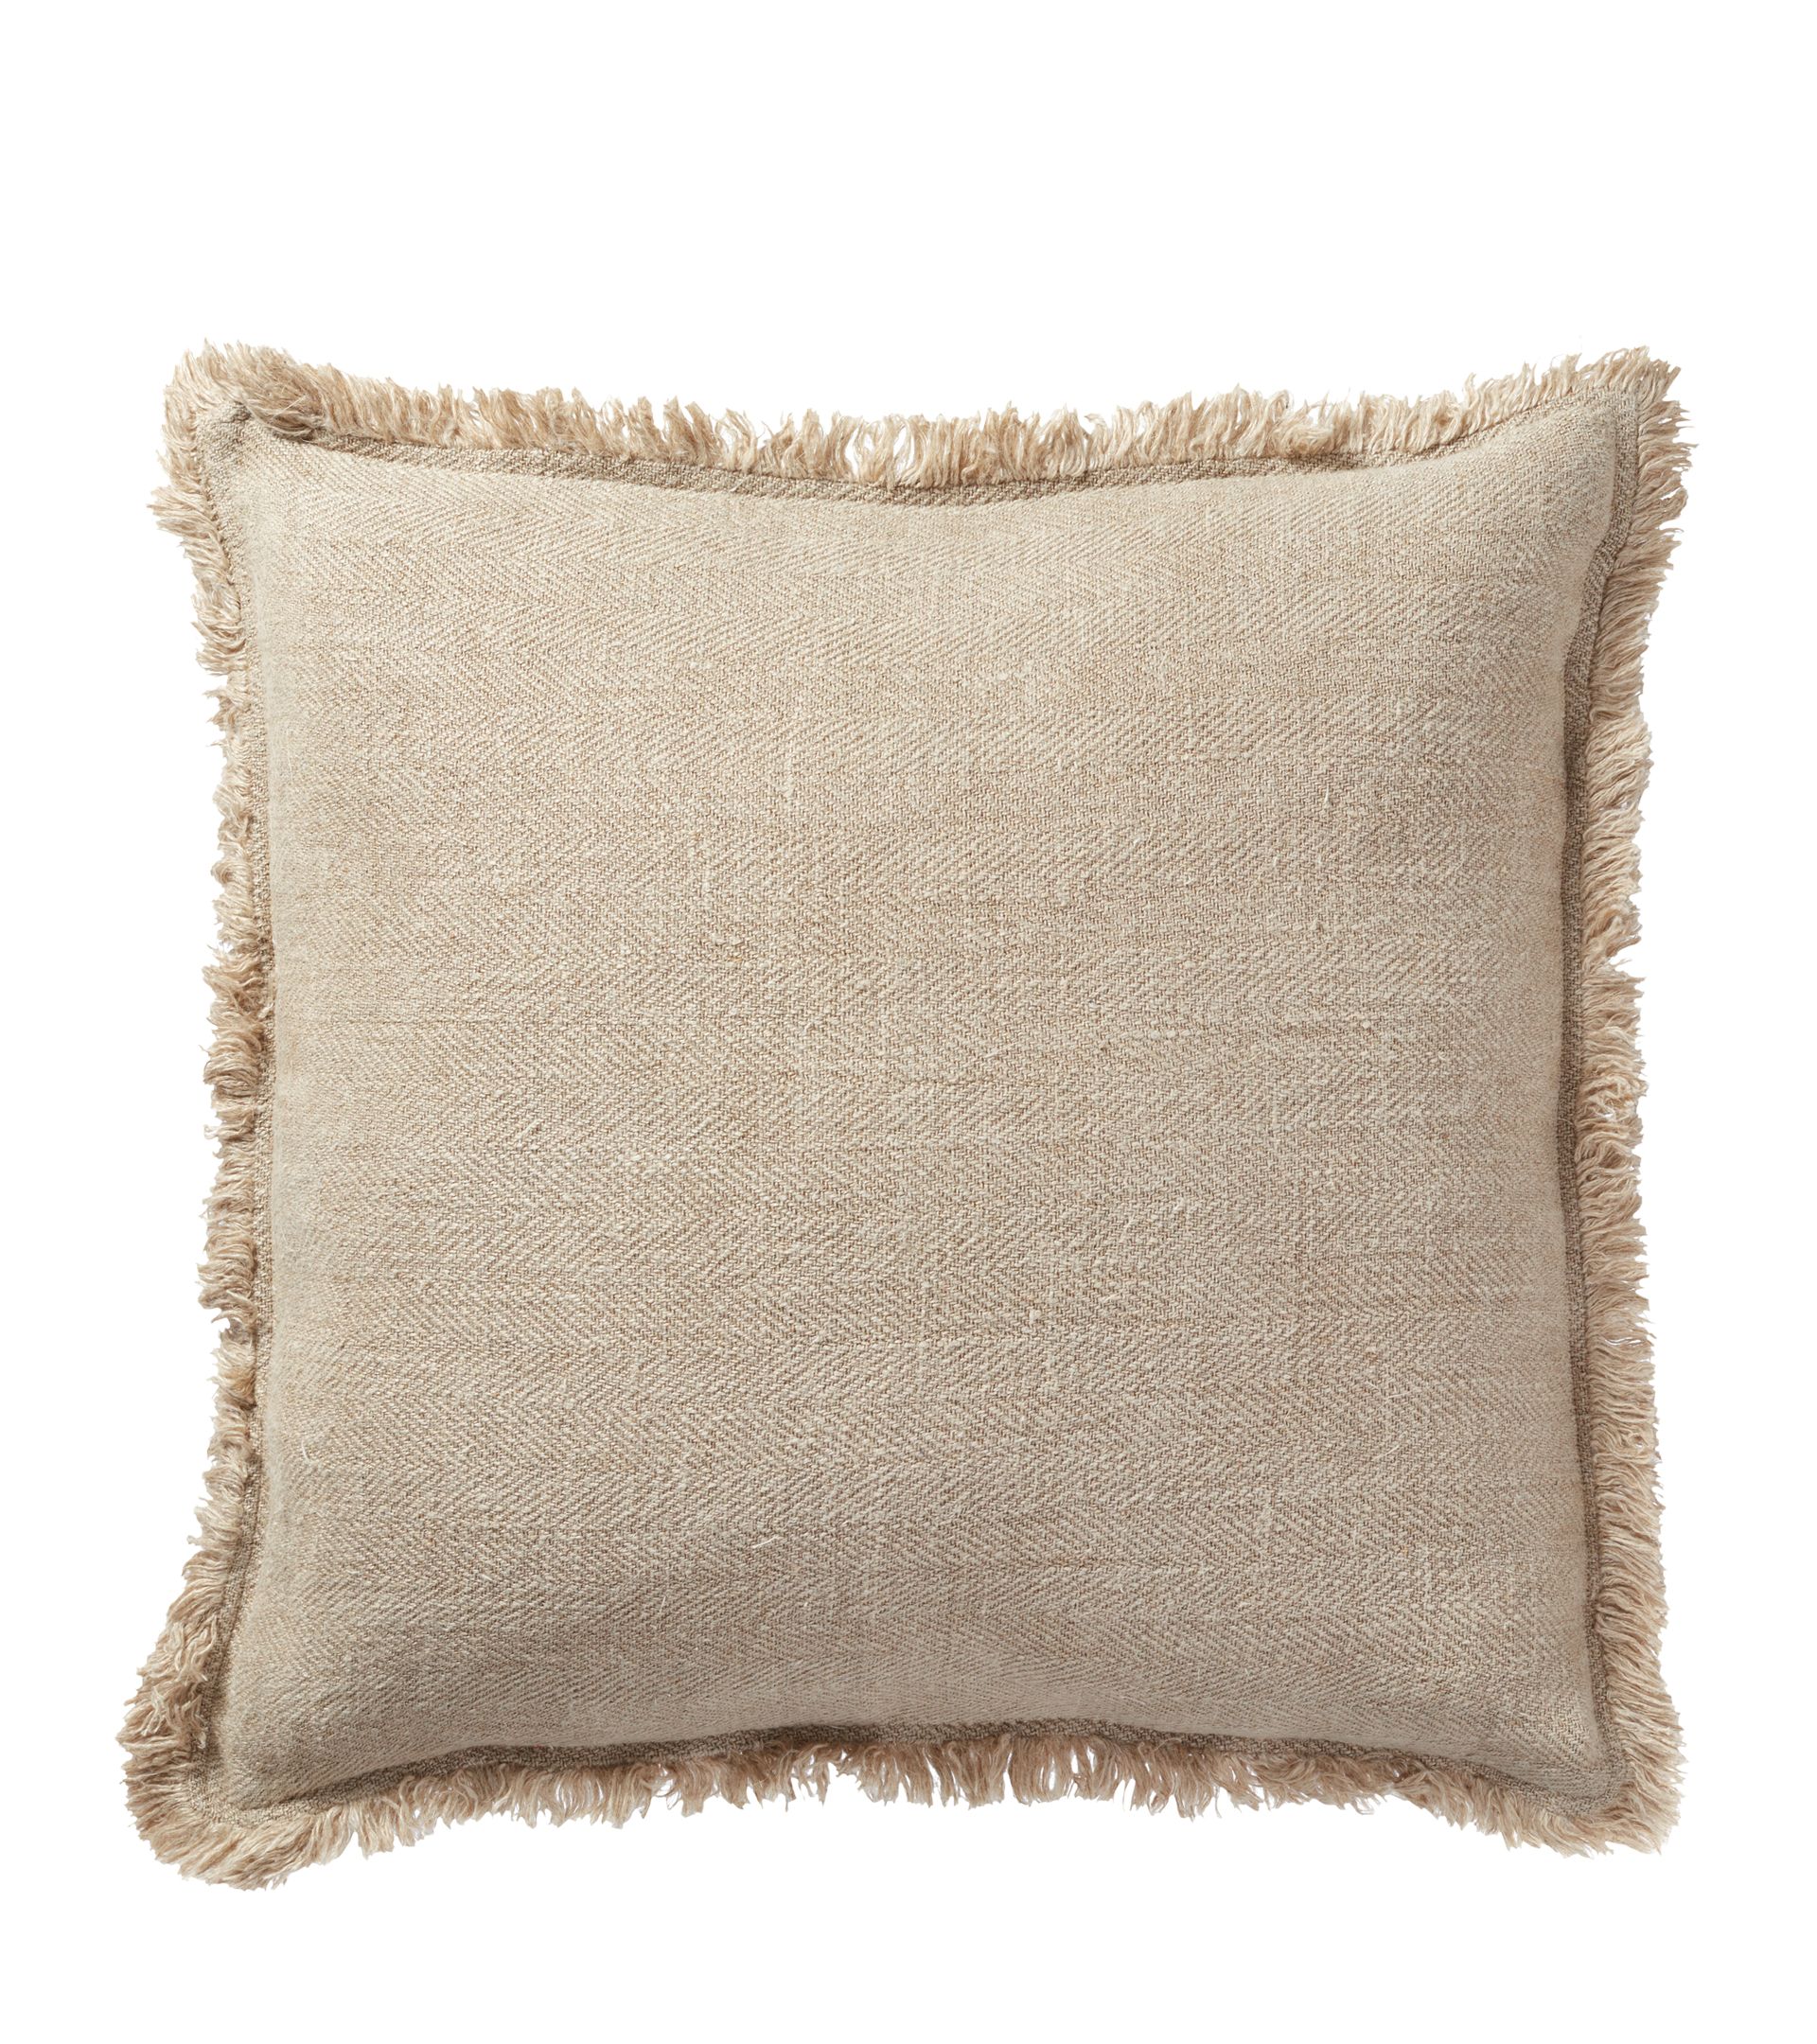 Morbihan Pillow Cover - Natural | OKA US